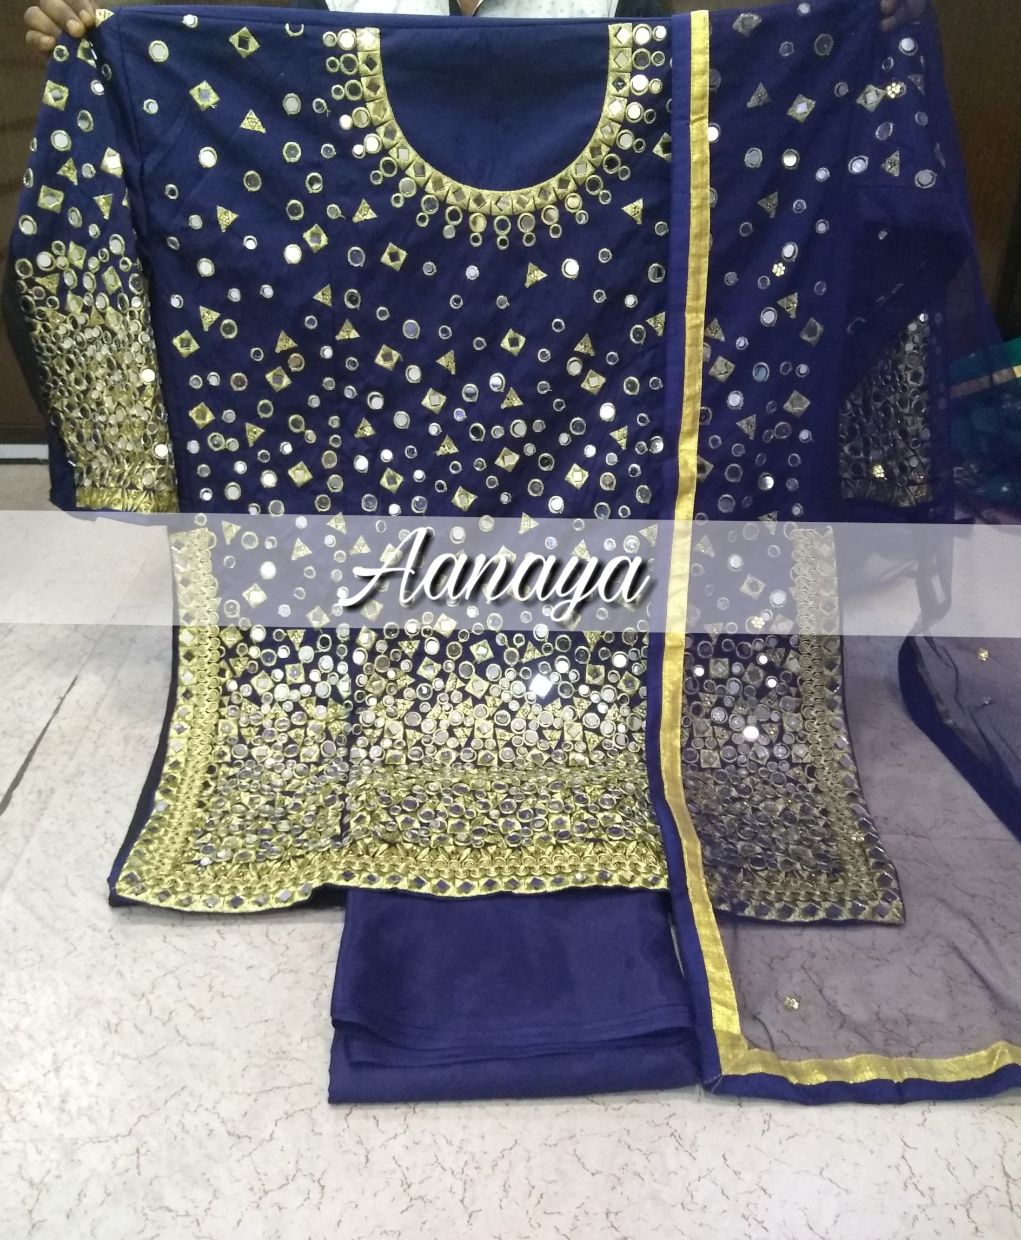 Aanaya 40000 Series Tapeta Silk Designer Punjabi Suit